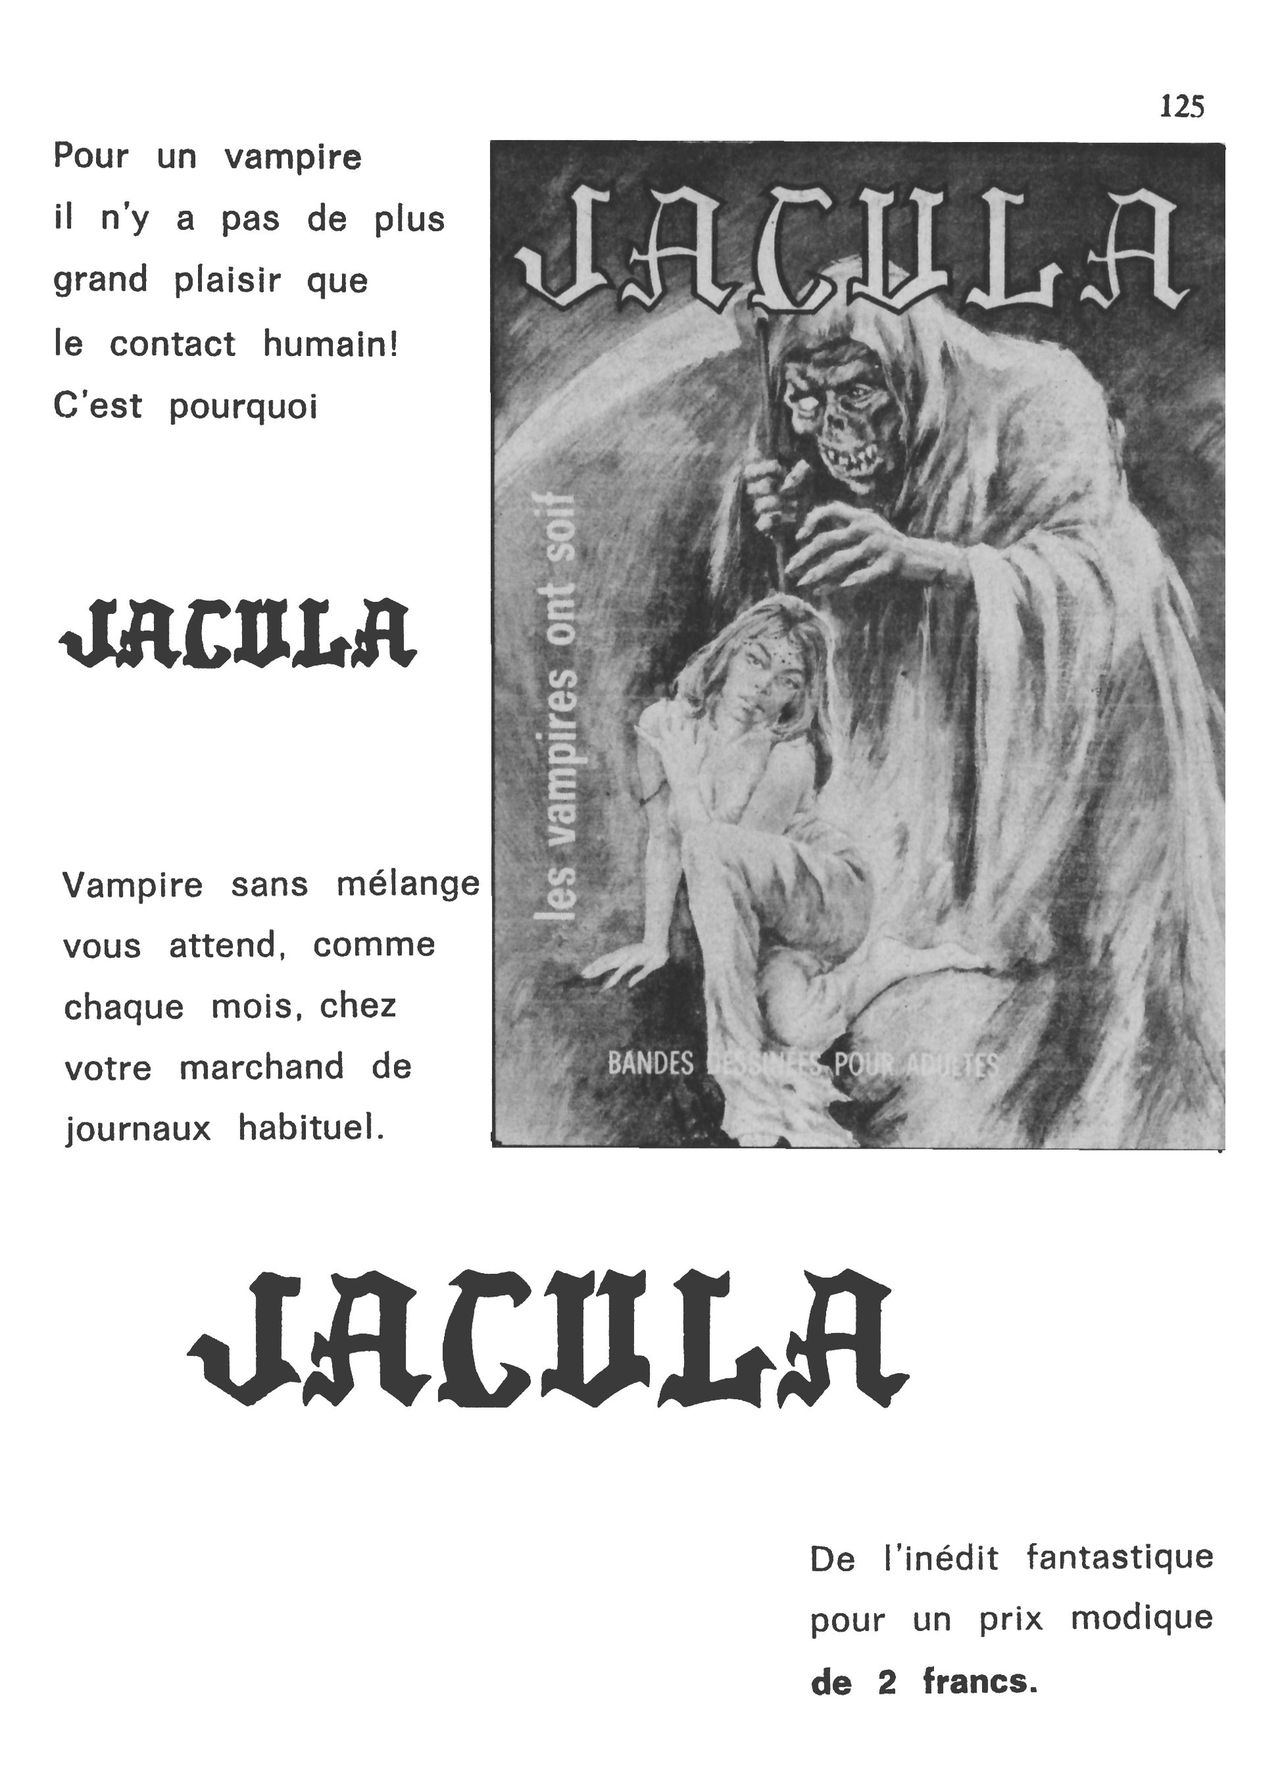 Isabella, la Duchesse du Diable - T047 - La Maison de lOurs numero d'image 124